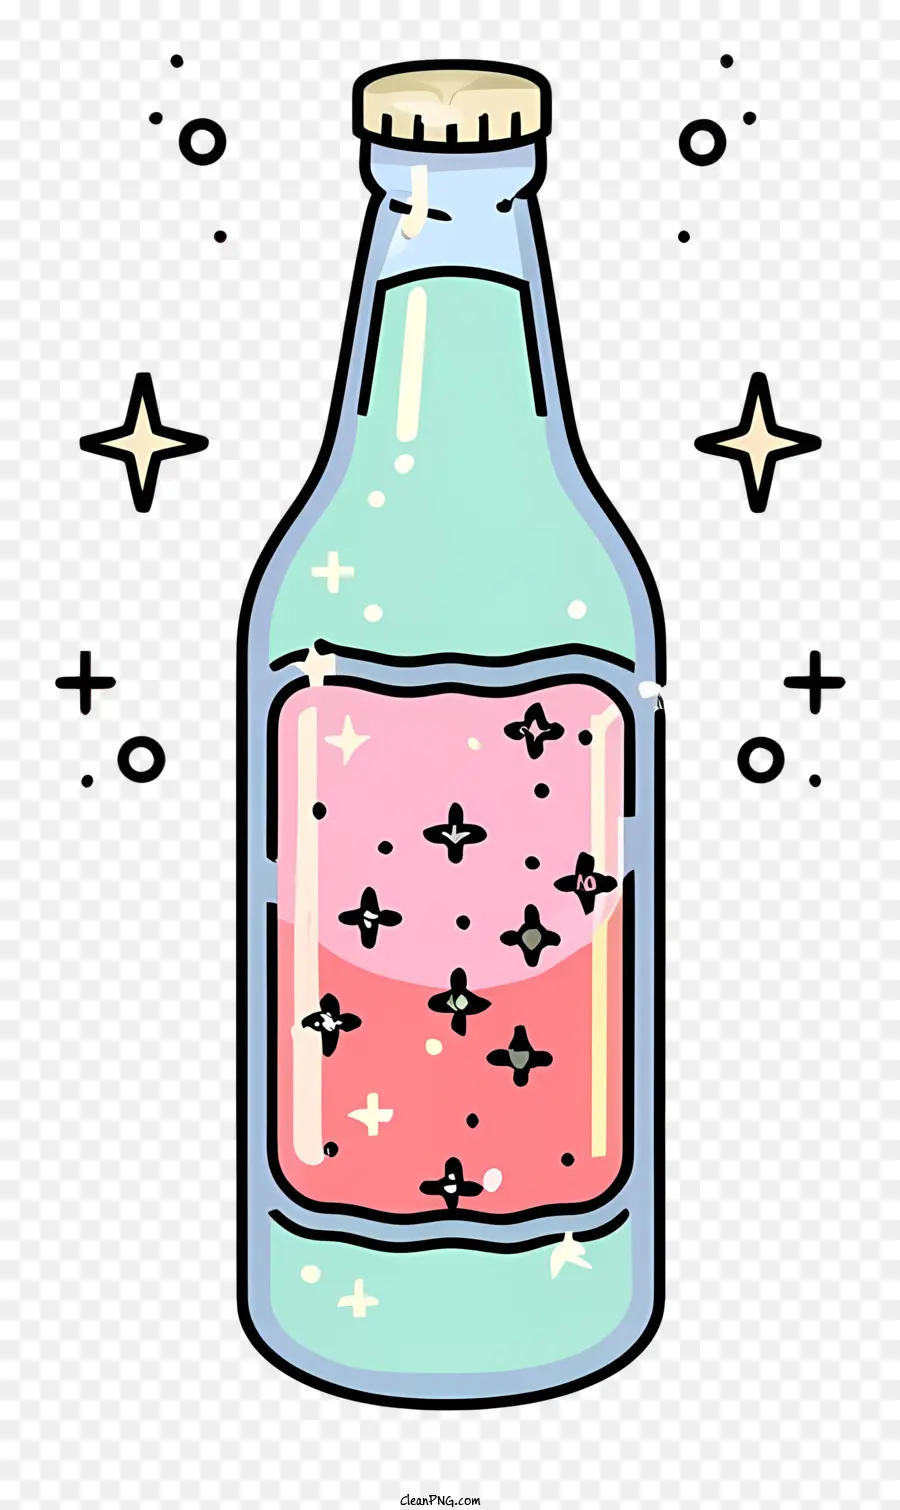 Glasflasche Flüssigkeit mit blasen rosa flüssigen schaumigen Textur -Glasflaschenstopper - Rosa schaumige Flüssigkeit in klarer Glasflasche